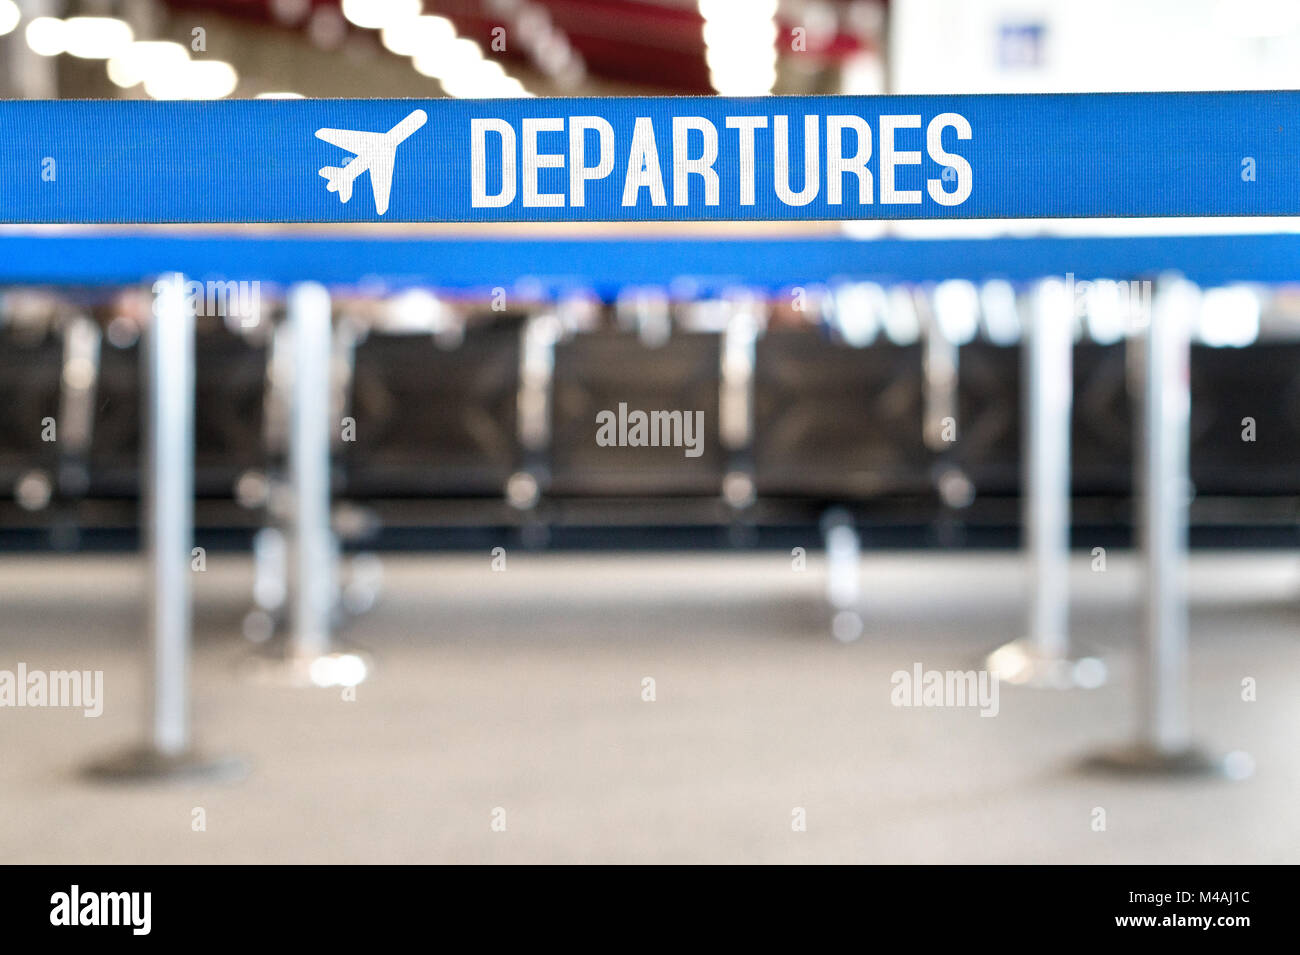 Abflüge Text mit dem Flugzeug Symbol auf eine Warteschlange Barriere. Wartebereich und Lounge Sitze am Flughafen Terminal. Reisen, Urlaub und Tourismus Konzept. Stockfoto